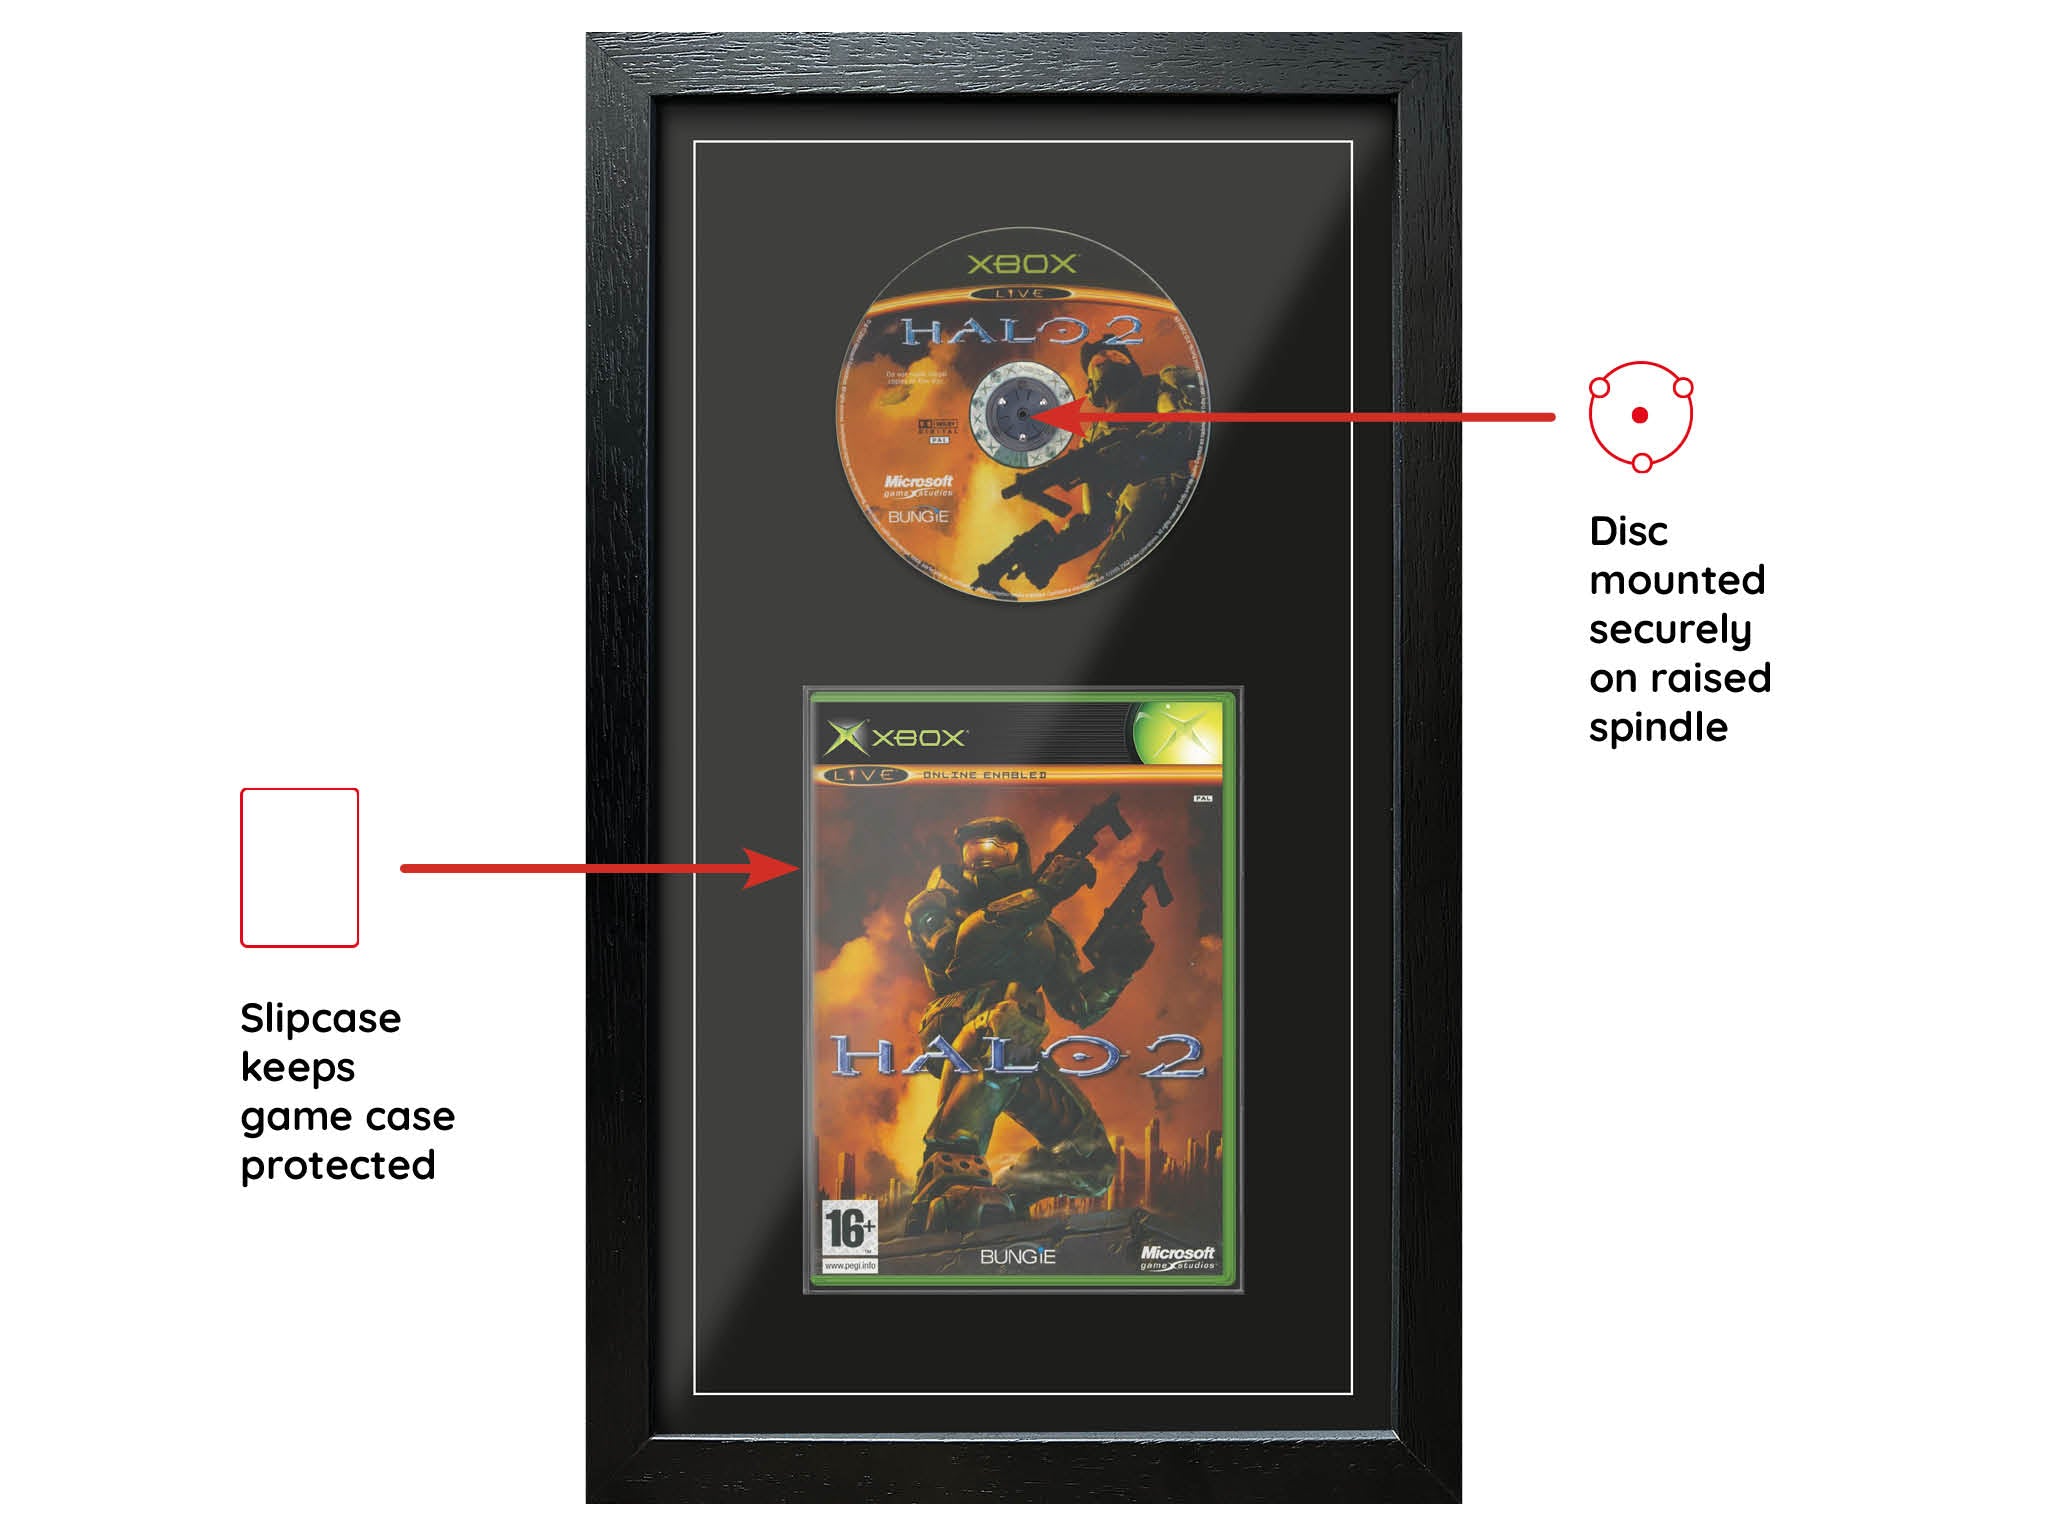 Halo 2 (Exhibition Range) Framed Game - Frame-A-Game